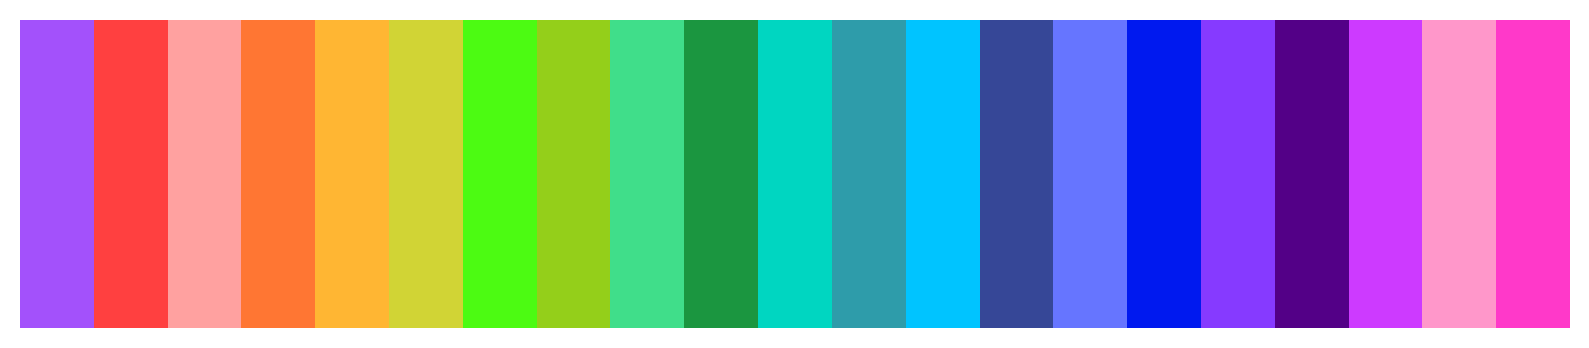 default-color-palette